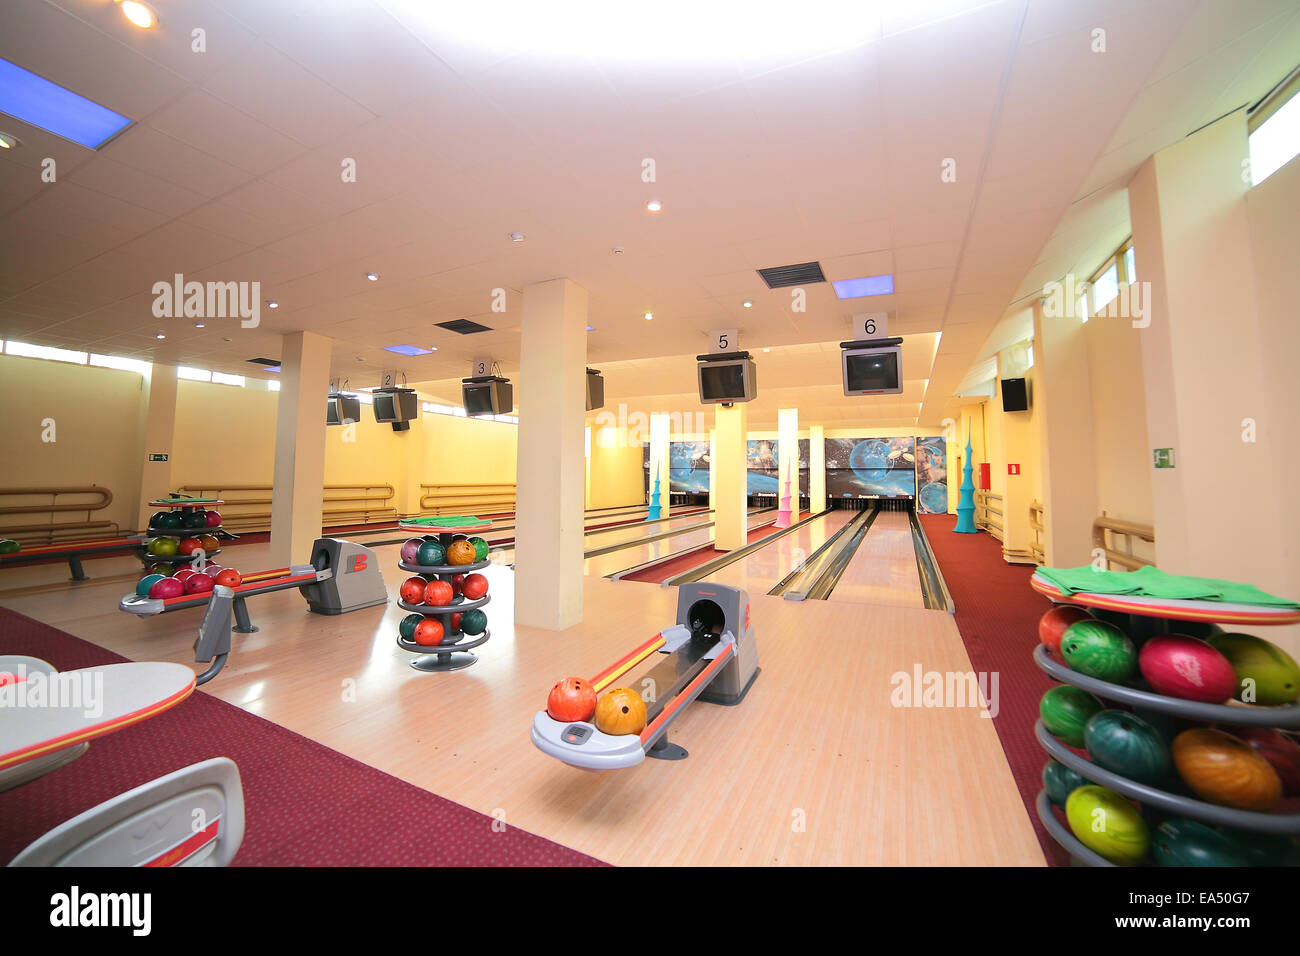 Bowling lane Stock Photo